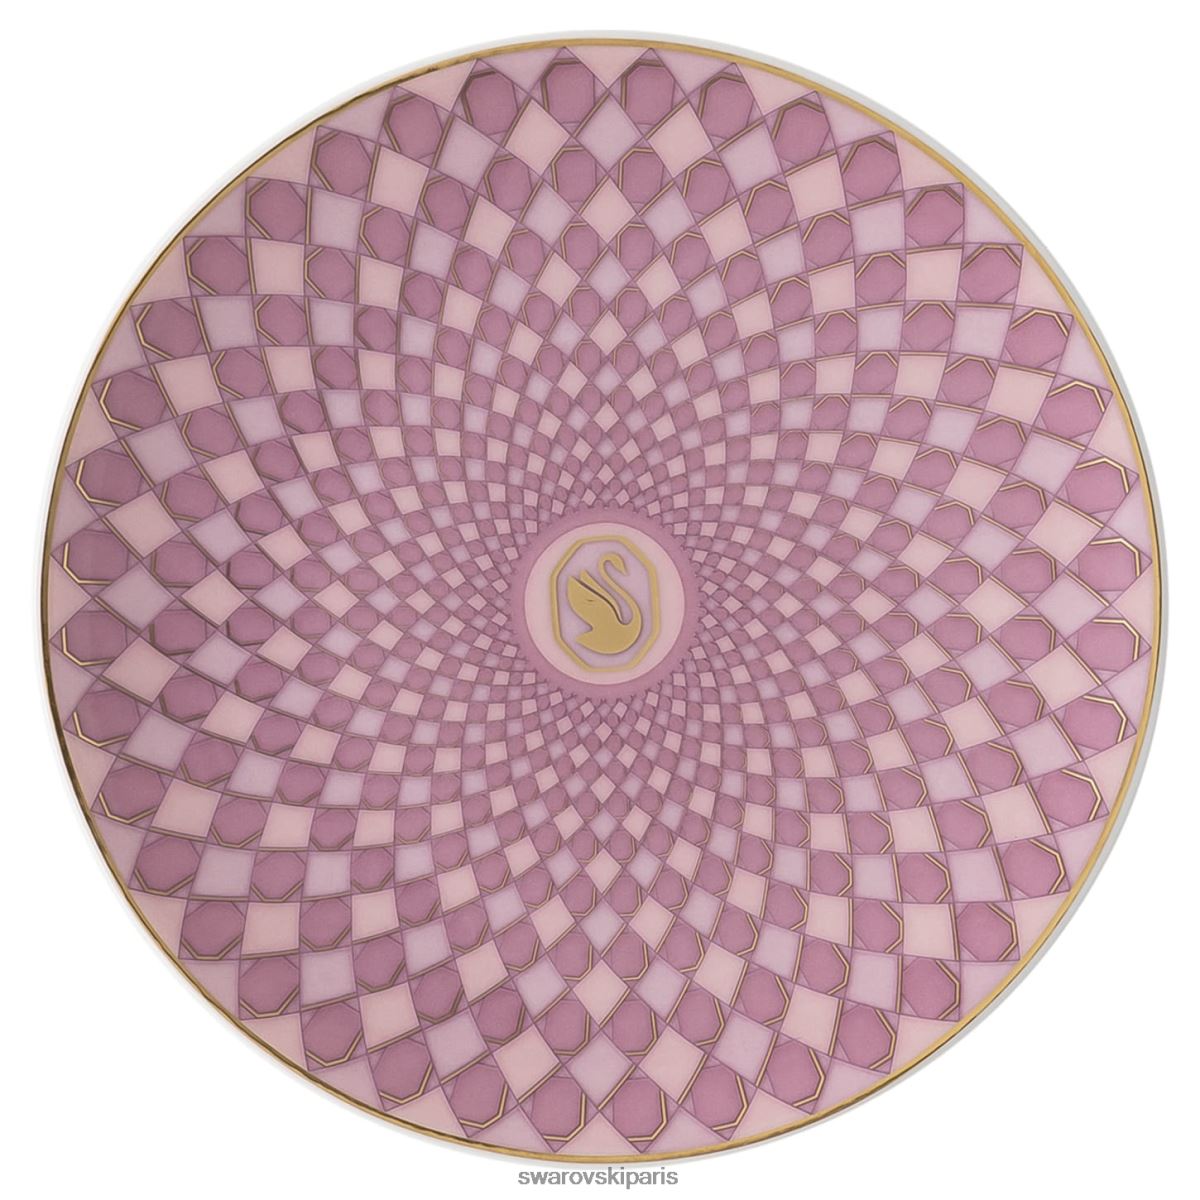 décorations Swarovski plaque signalétique porcelaine, rose RZD0XJ1716